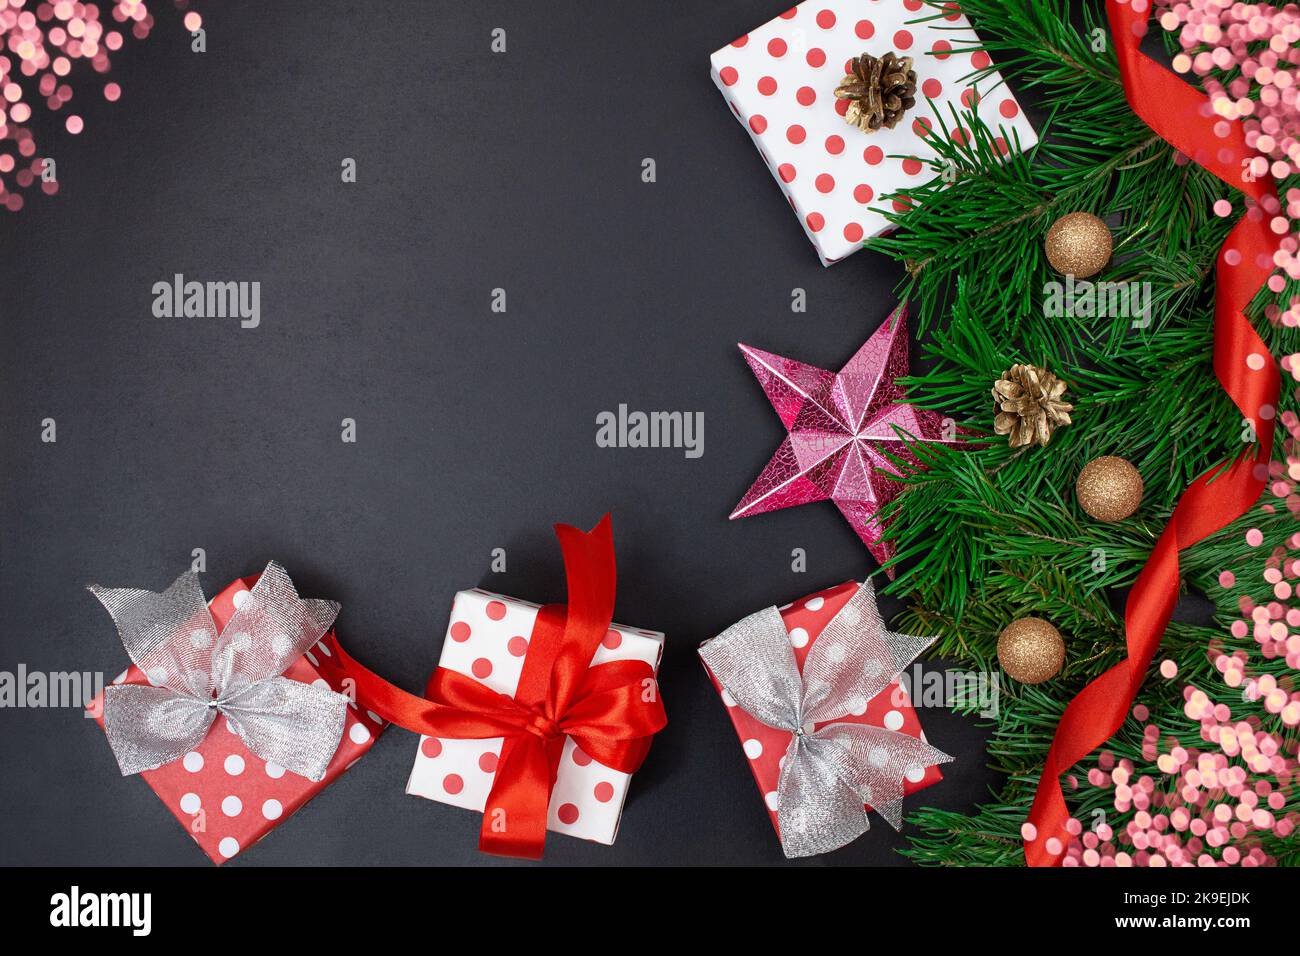 Scatole regalo con archi, rami di abete, stella, nastro e bokeh su sfondo nero. Natale, Capodanno. Spazio di copia Foto Stock